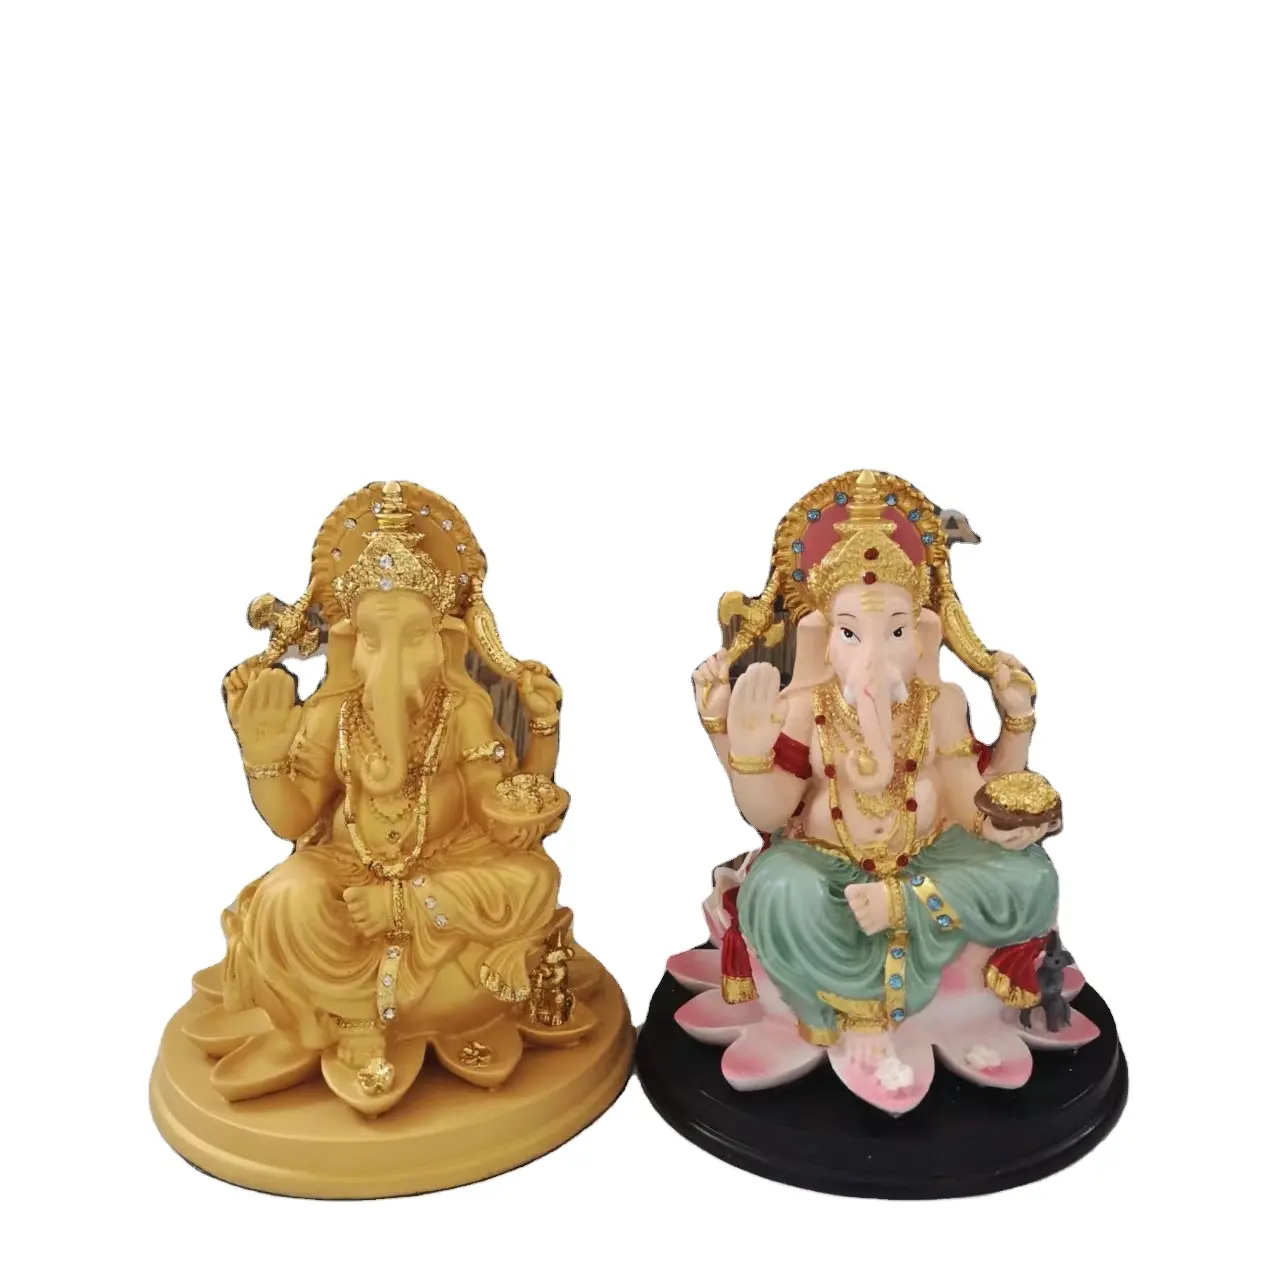 Ganesha resina artigianato ODM OEM statua idol lord ganesha scultura religione decorazione artigianato in resina elefante statua indiana ganesha